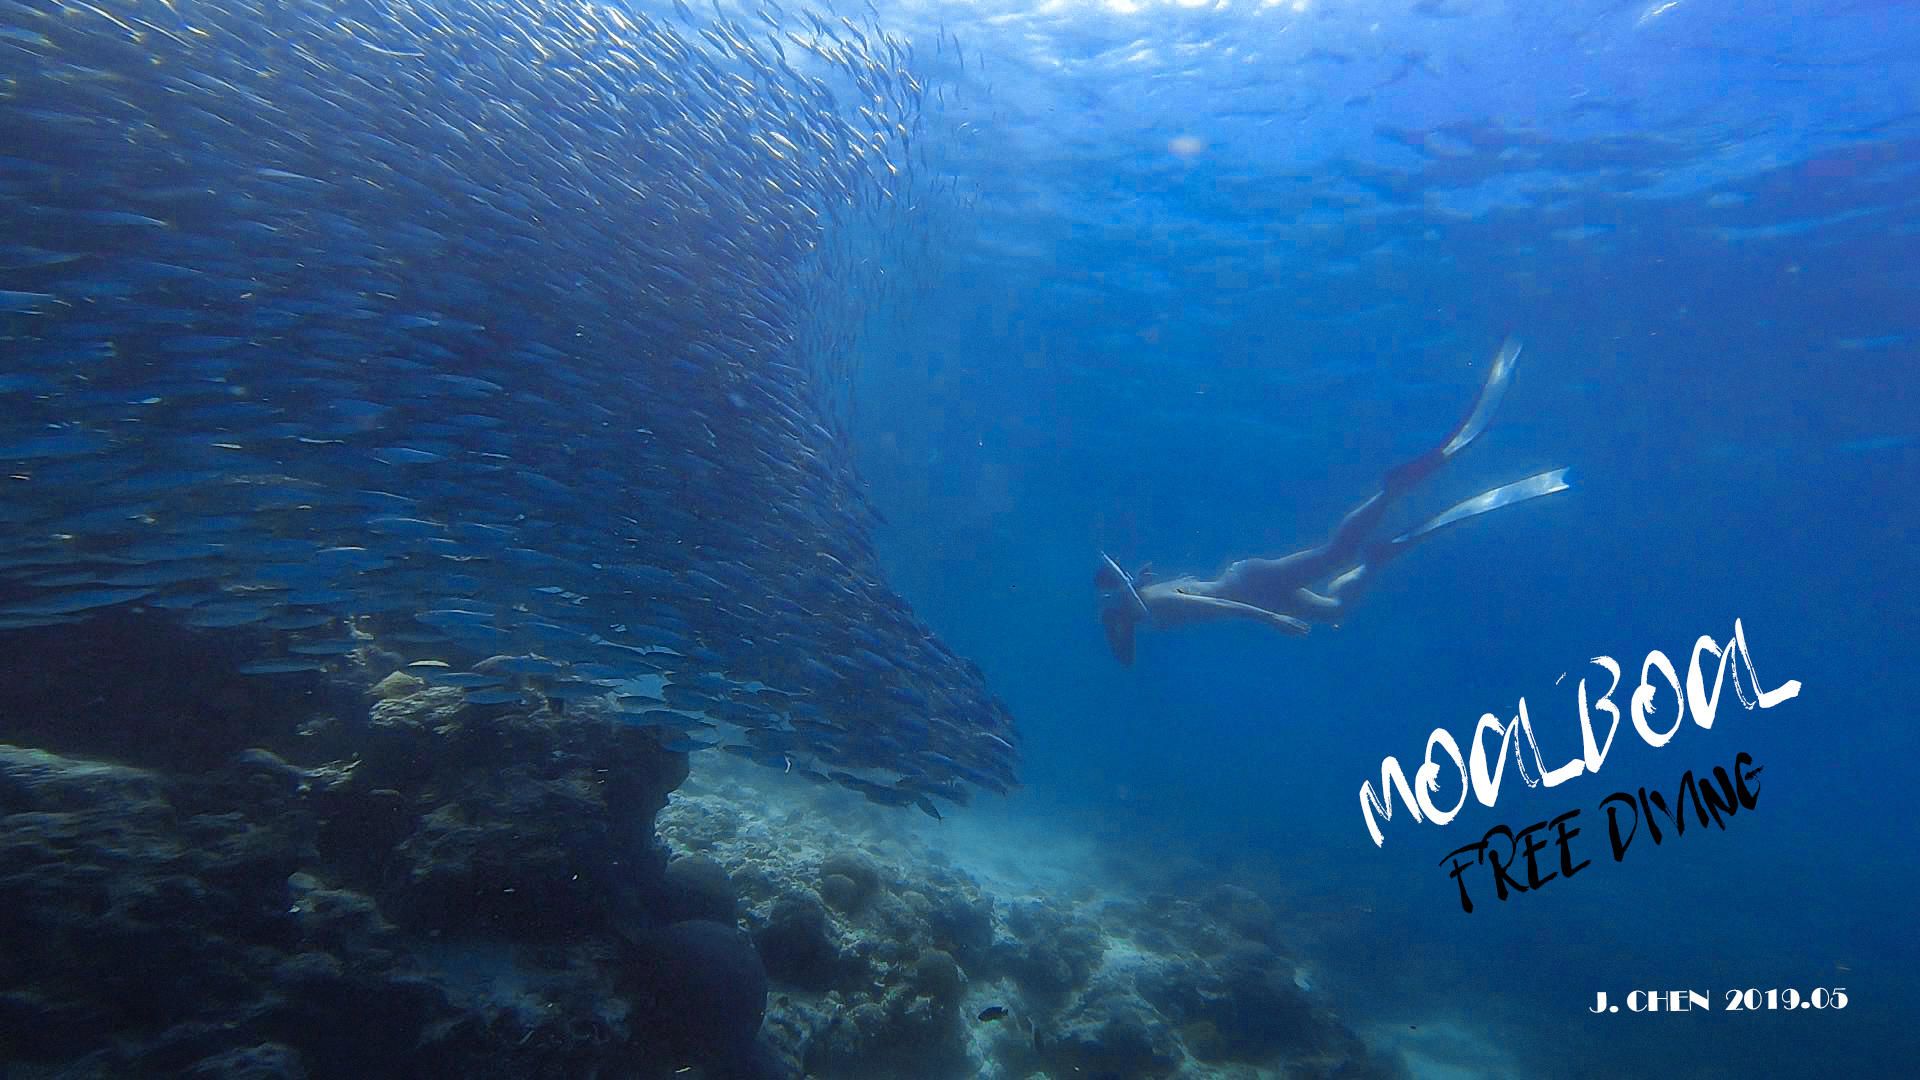 菲律宾·墨宝丨打卡世界级潜水点·去看沙丁鱼风暴吧！  这是位于 宿务 的一座滨海小城，被称为沙丁鱼风